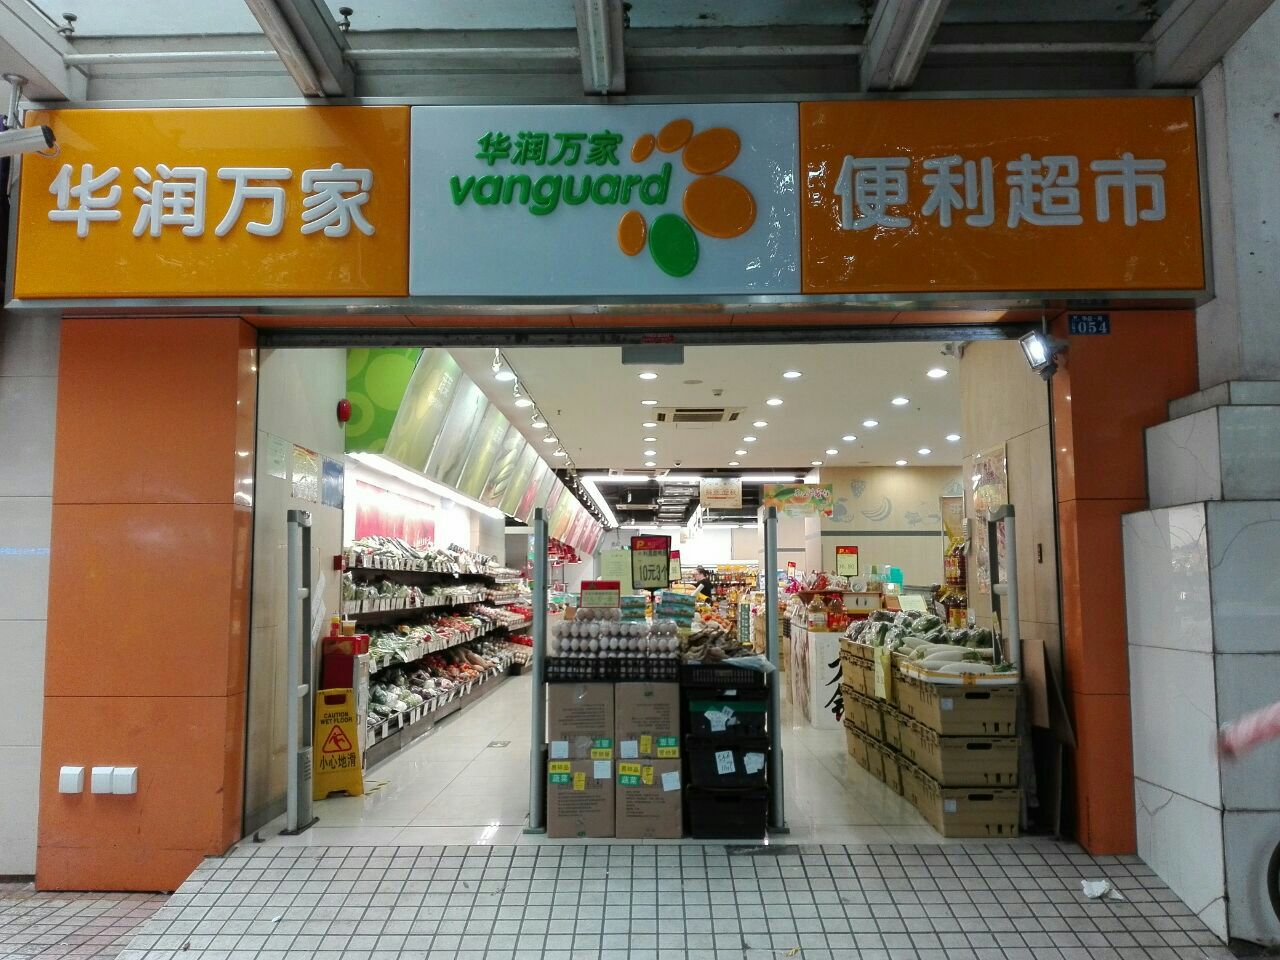 华润万家超市广州图片